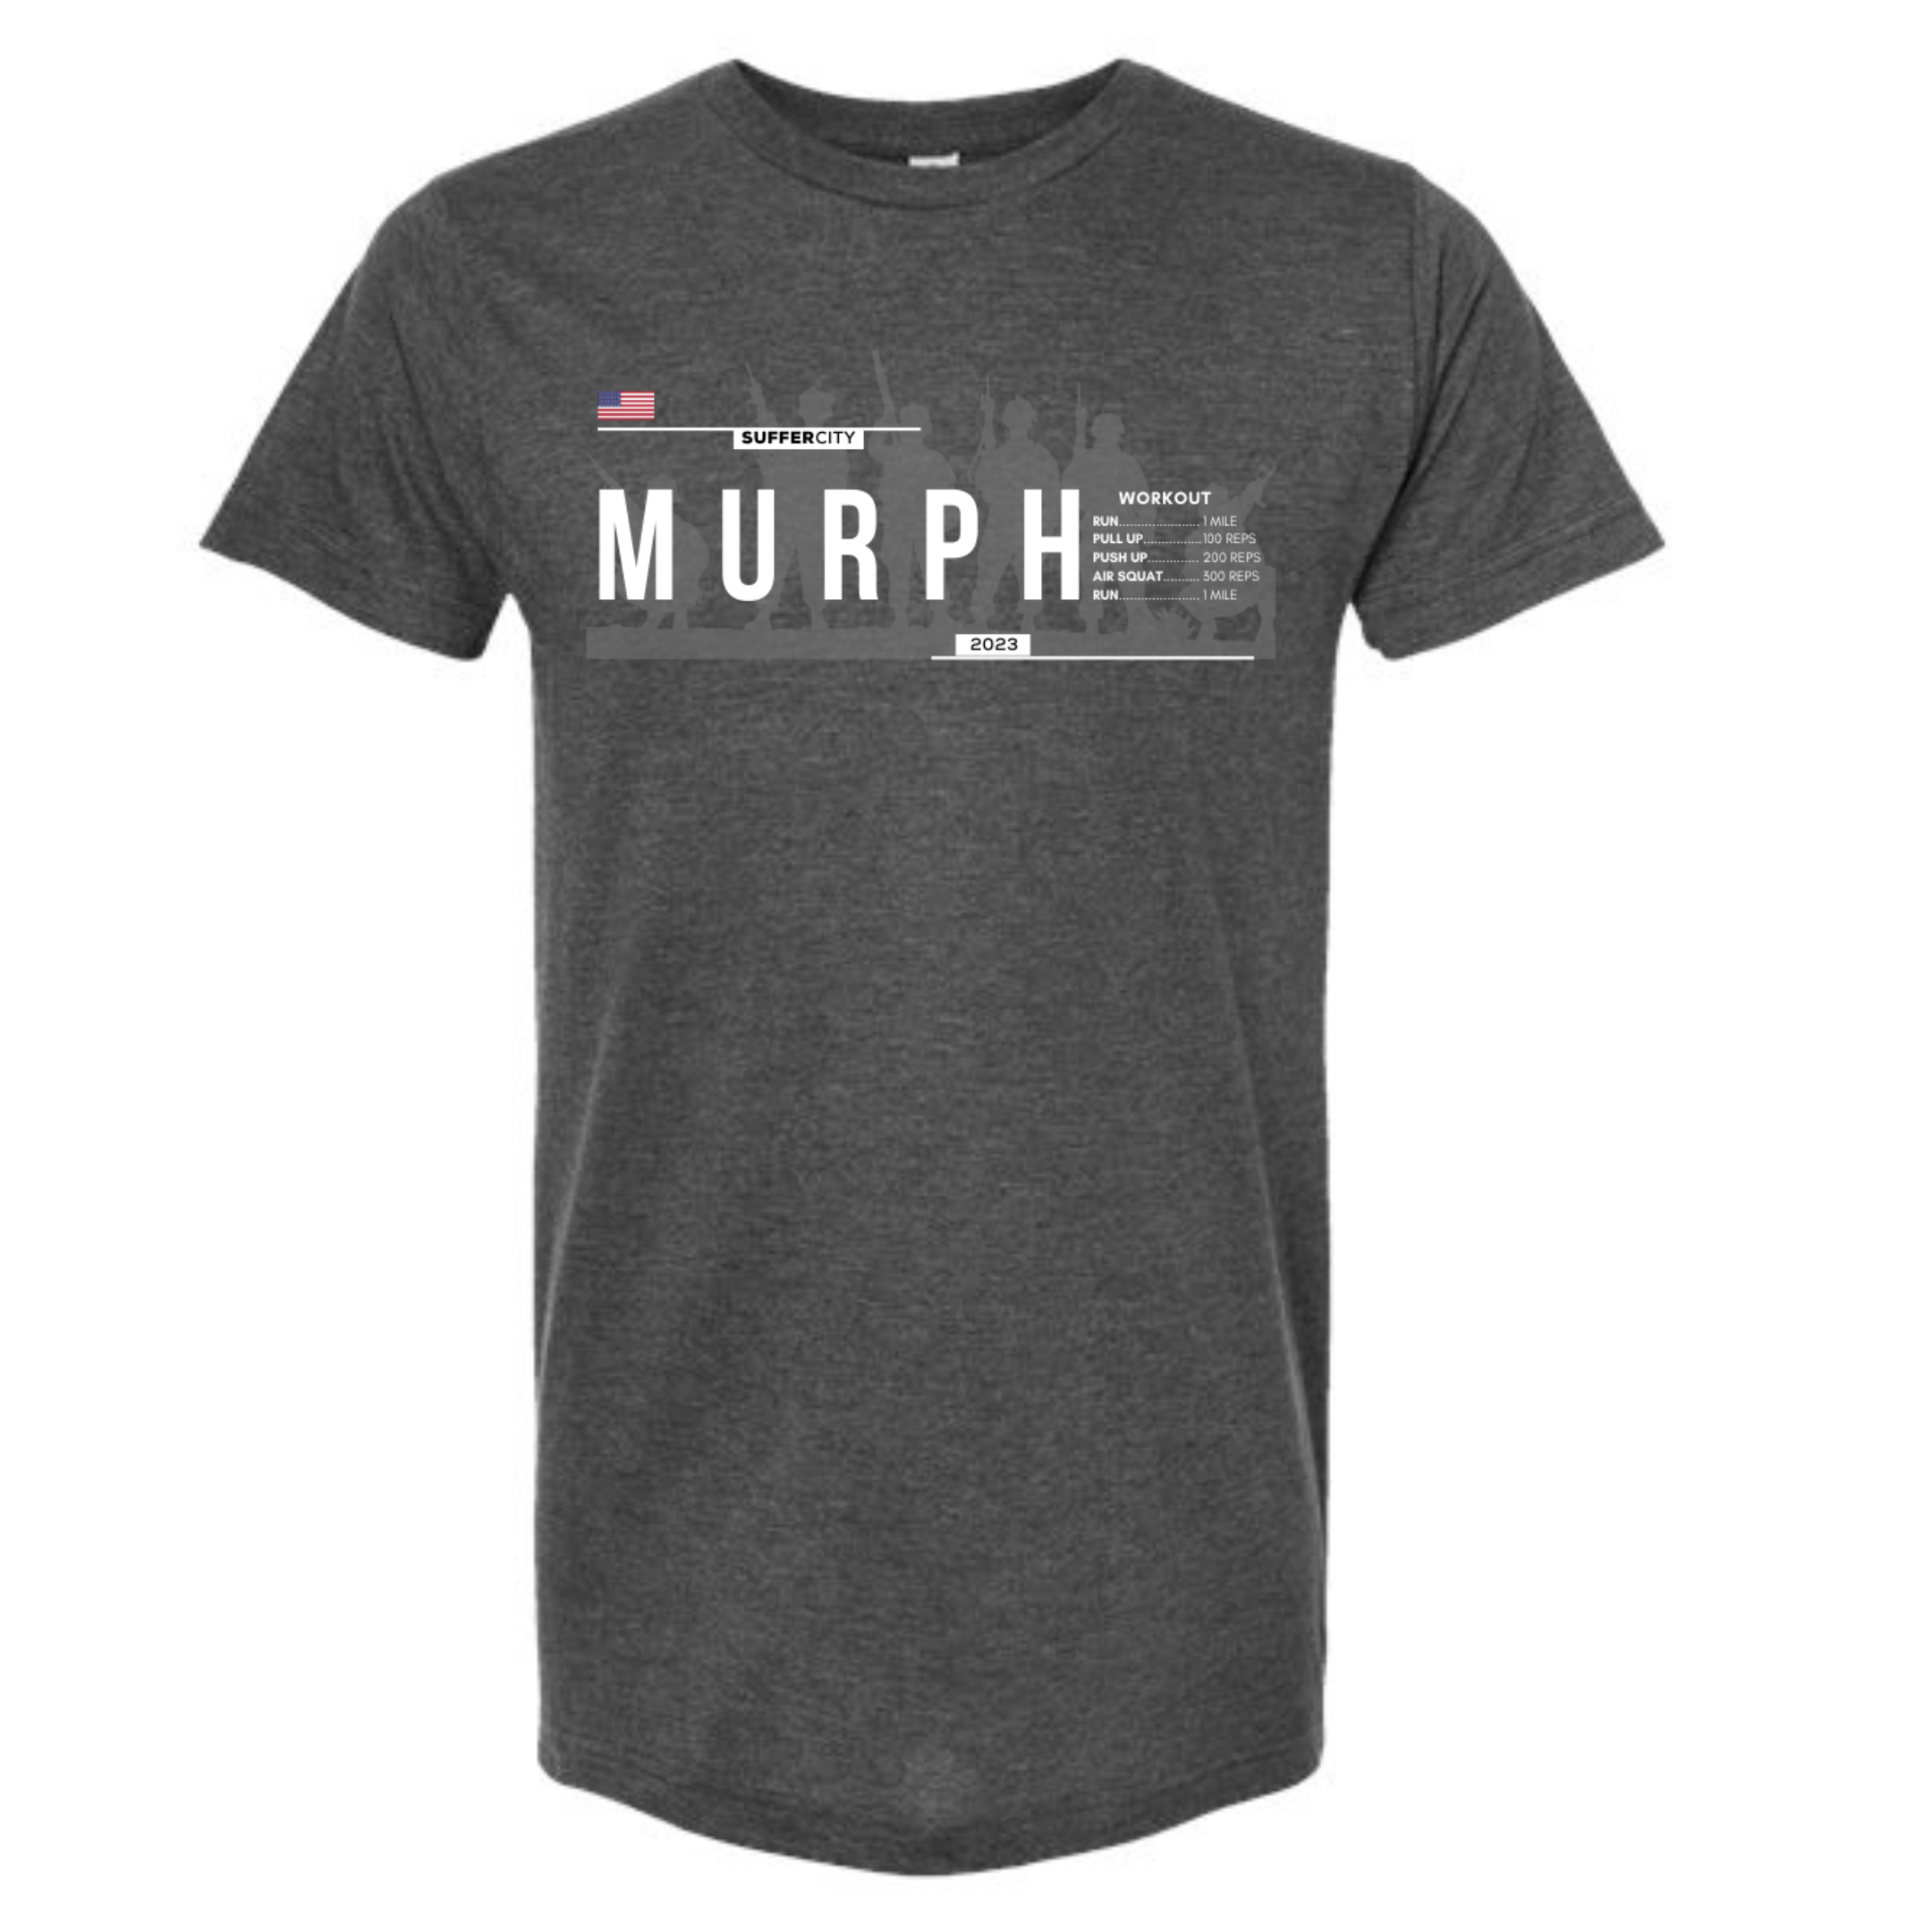 Murph “Cooler" Options